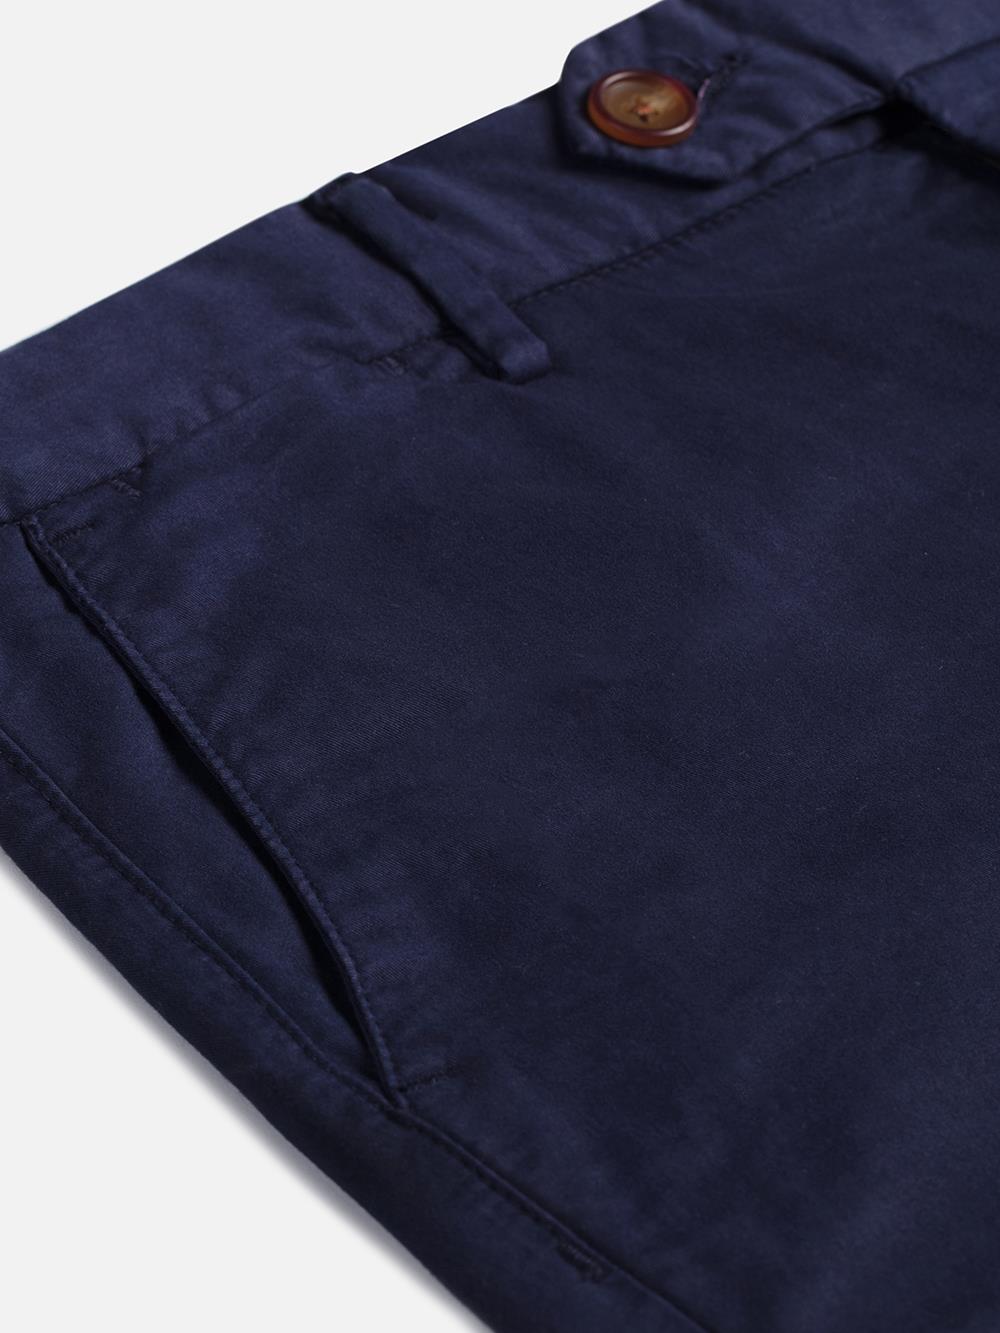 Bermuda-Shorts aus Marine-Baumwolle